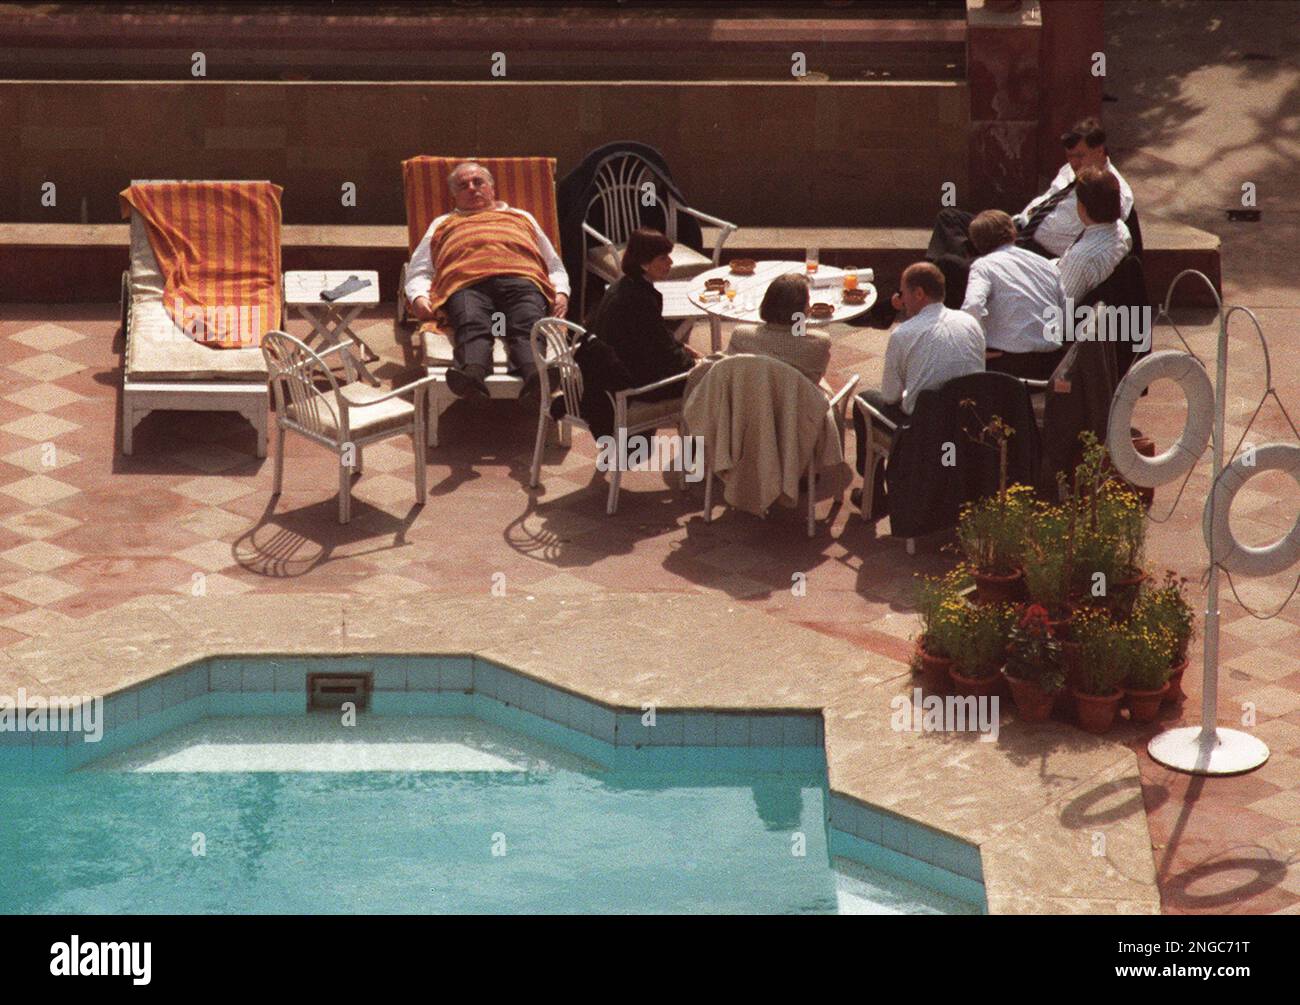 Mit einem Handtuch bedeckt haelt Bundeskanzler Helmut Kohl in einem  Liegestuhl am Swimmingpool in seinem Hotel in New Delhi am Montag, den 22.  Februar 1993, ein Nickerchen. Kohl hielt saich zu einem